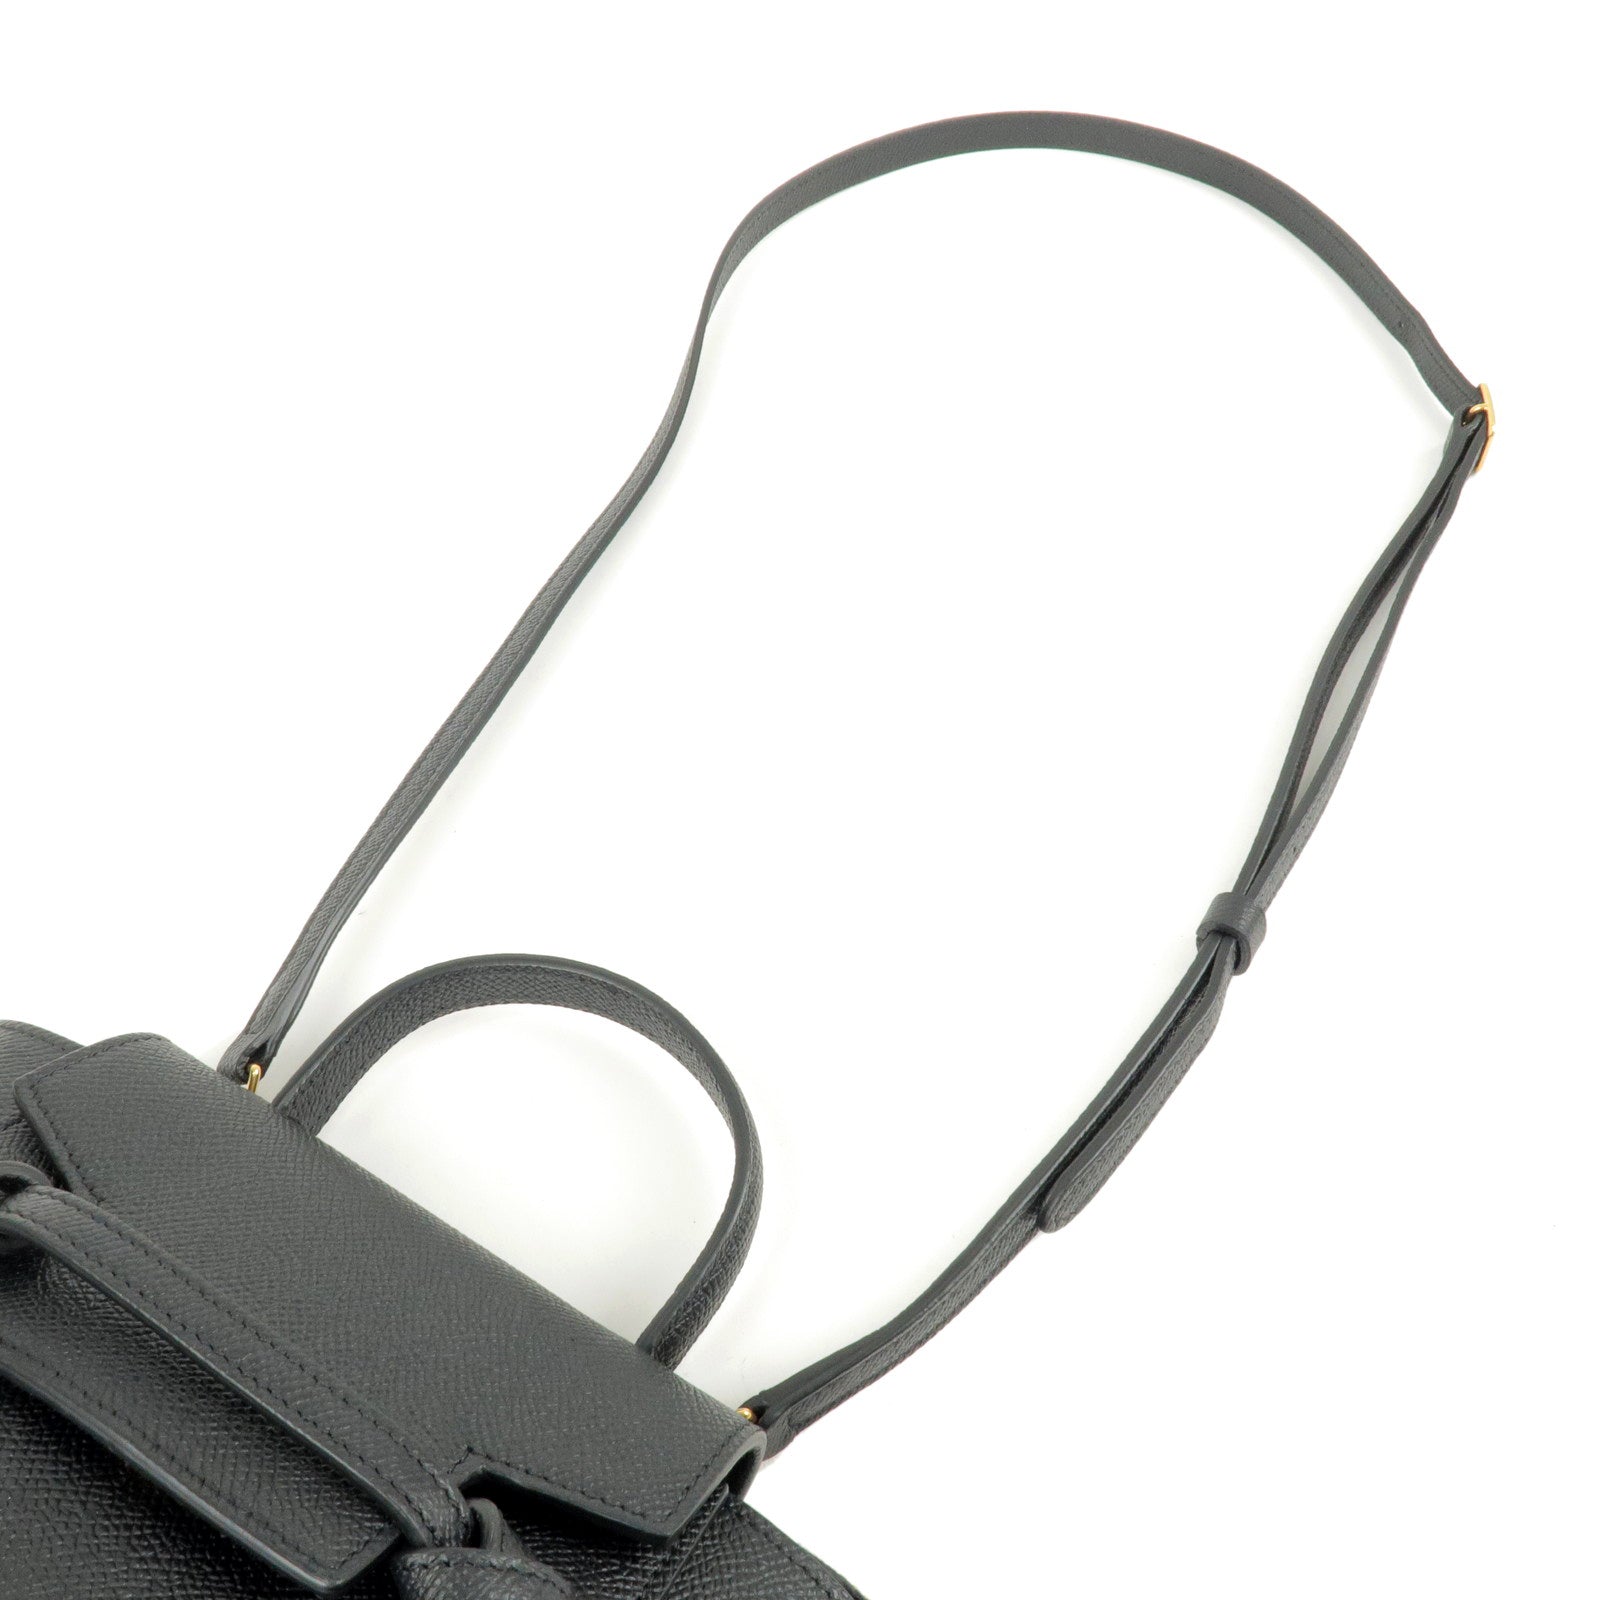 Celine Logo Grainy Leather Belt Bag Black